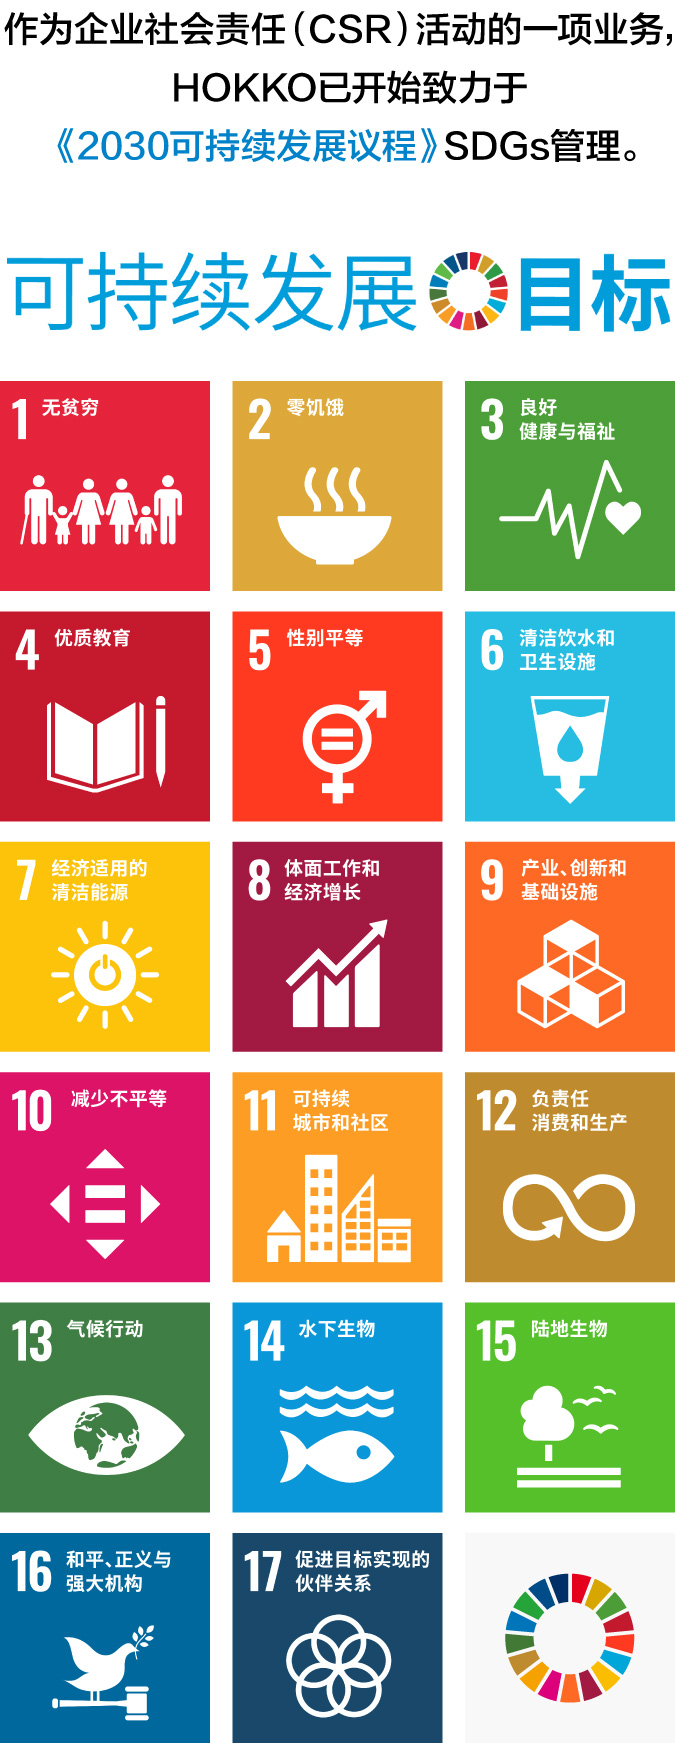 作为企业社会责任（CSR）活动的一项业务，HOKKO已开始致力于《2030可持续发展议程》SDGs管理。